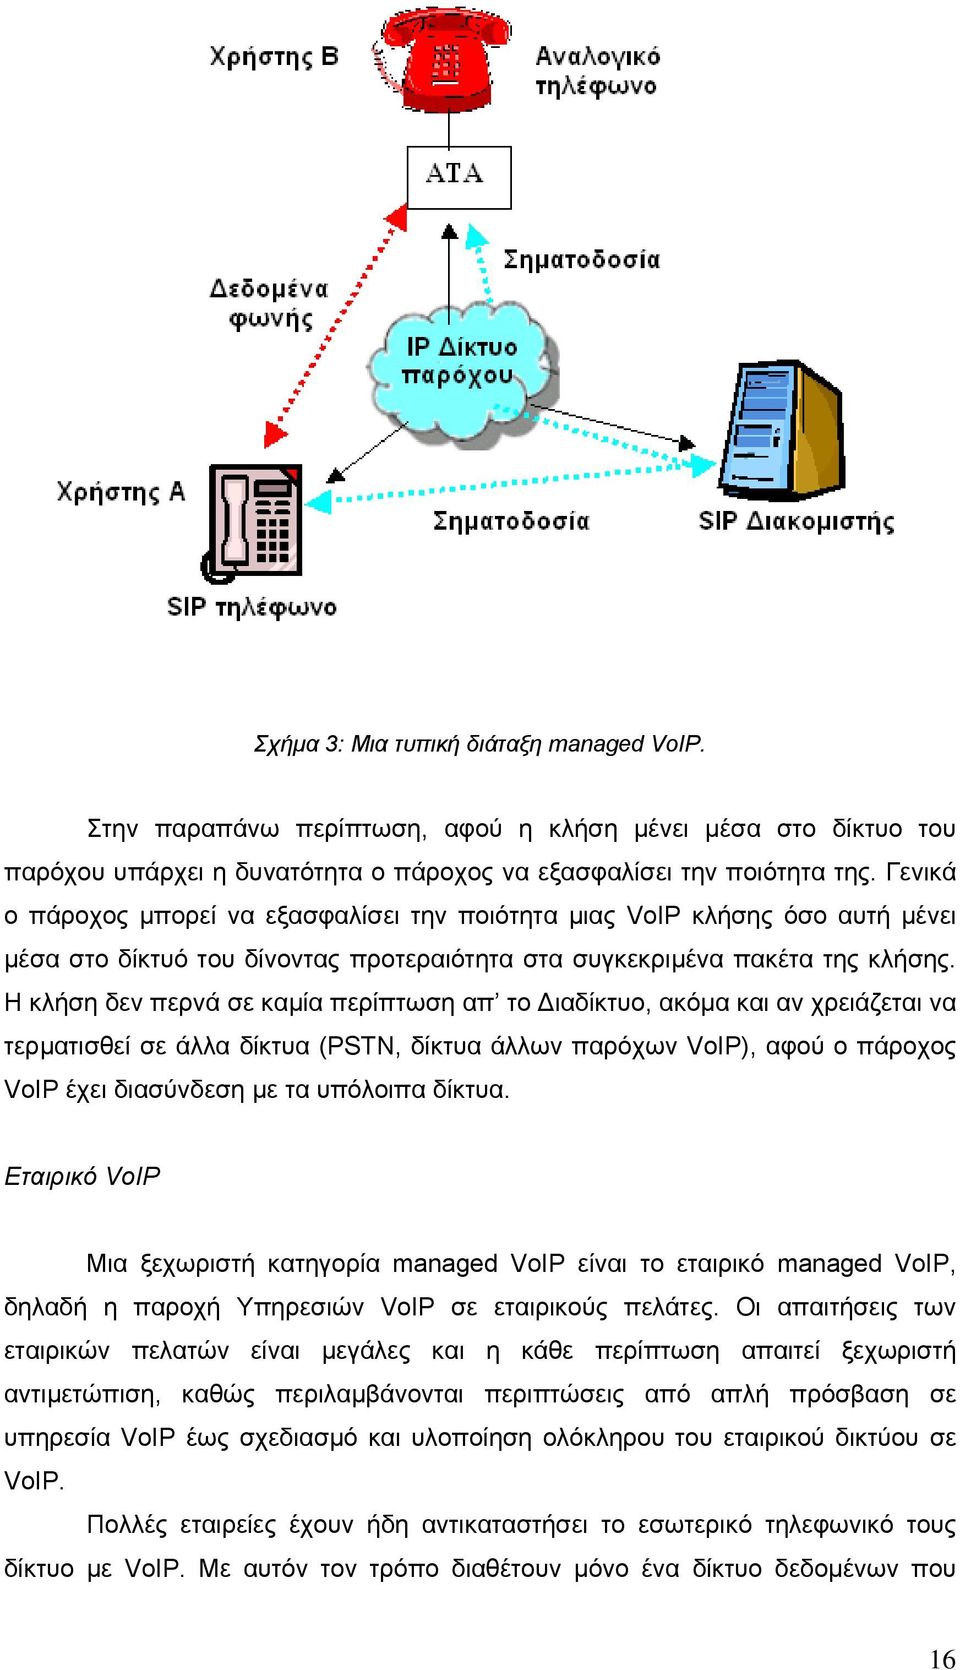 Η κλήση δεν περνά σε καµία περίπτωση απ το ιαδίκτυο, ακόµα και αν χρειάζεται να τερµατισθεί σε άλλα δίκτυα (PSTN, δίκτυα άλλων παρόχων VoIP), αφού ο πάροχος VoIP έχει διασύνδεση µε τα υπόλοιπα δίκτυα.